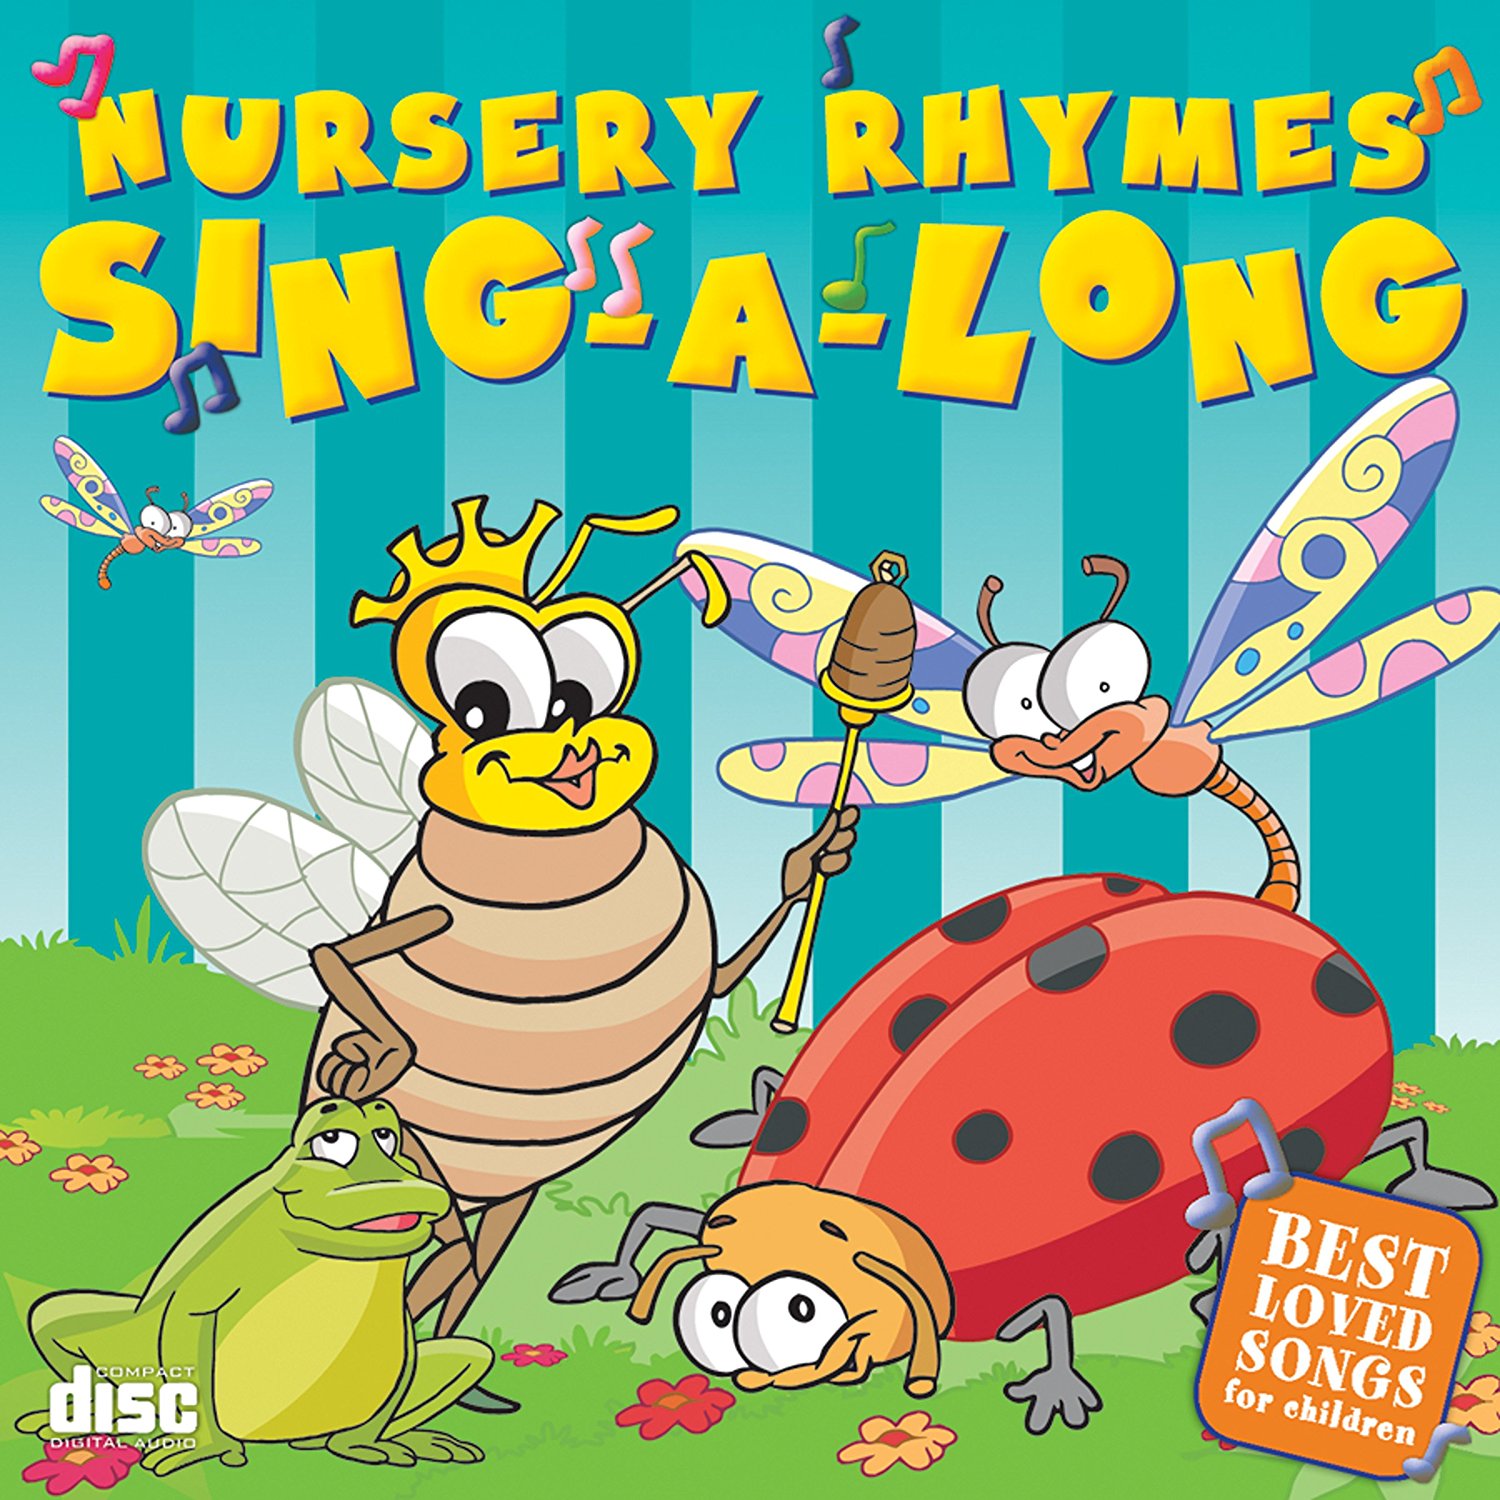 34 Nursery Rhymes Sing-a-longs - Best Loved Songs For Children Various Artists 